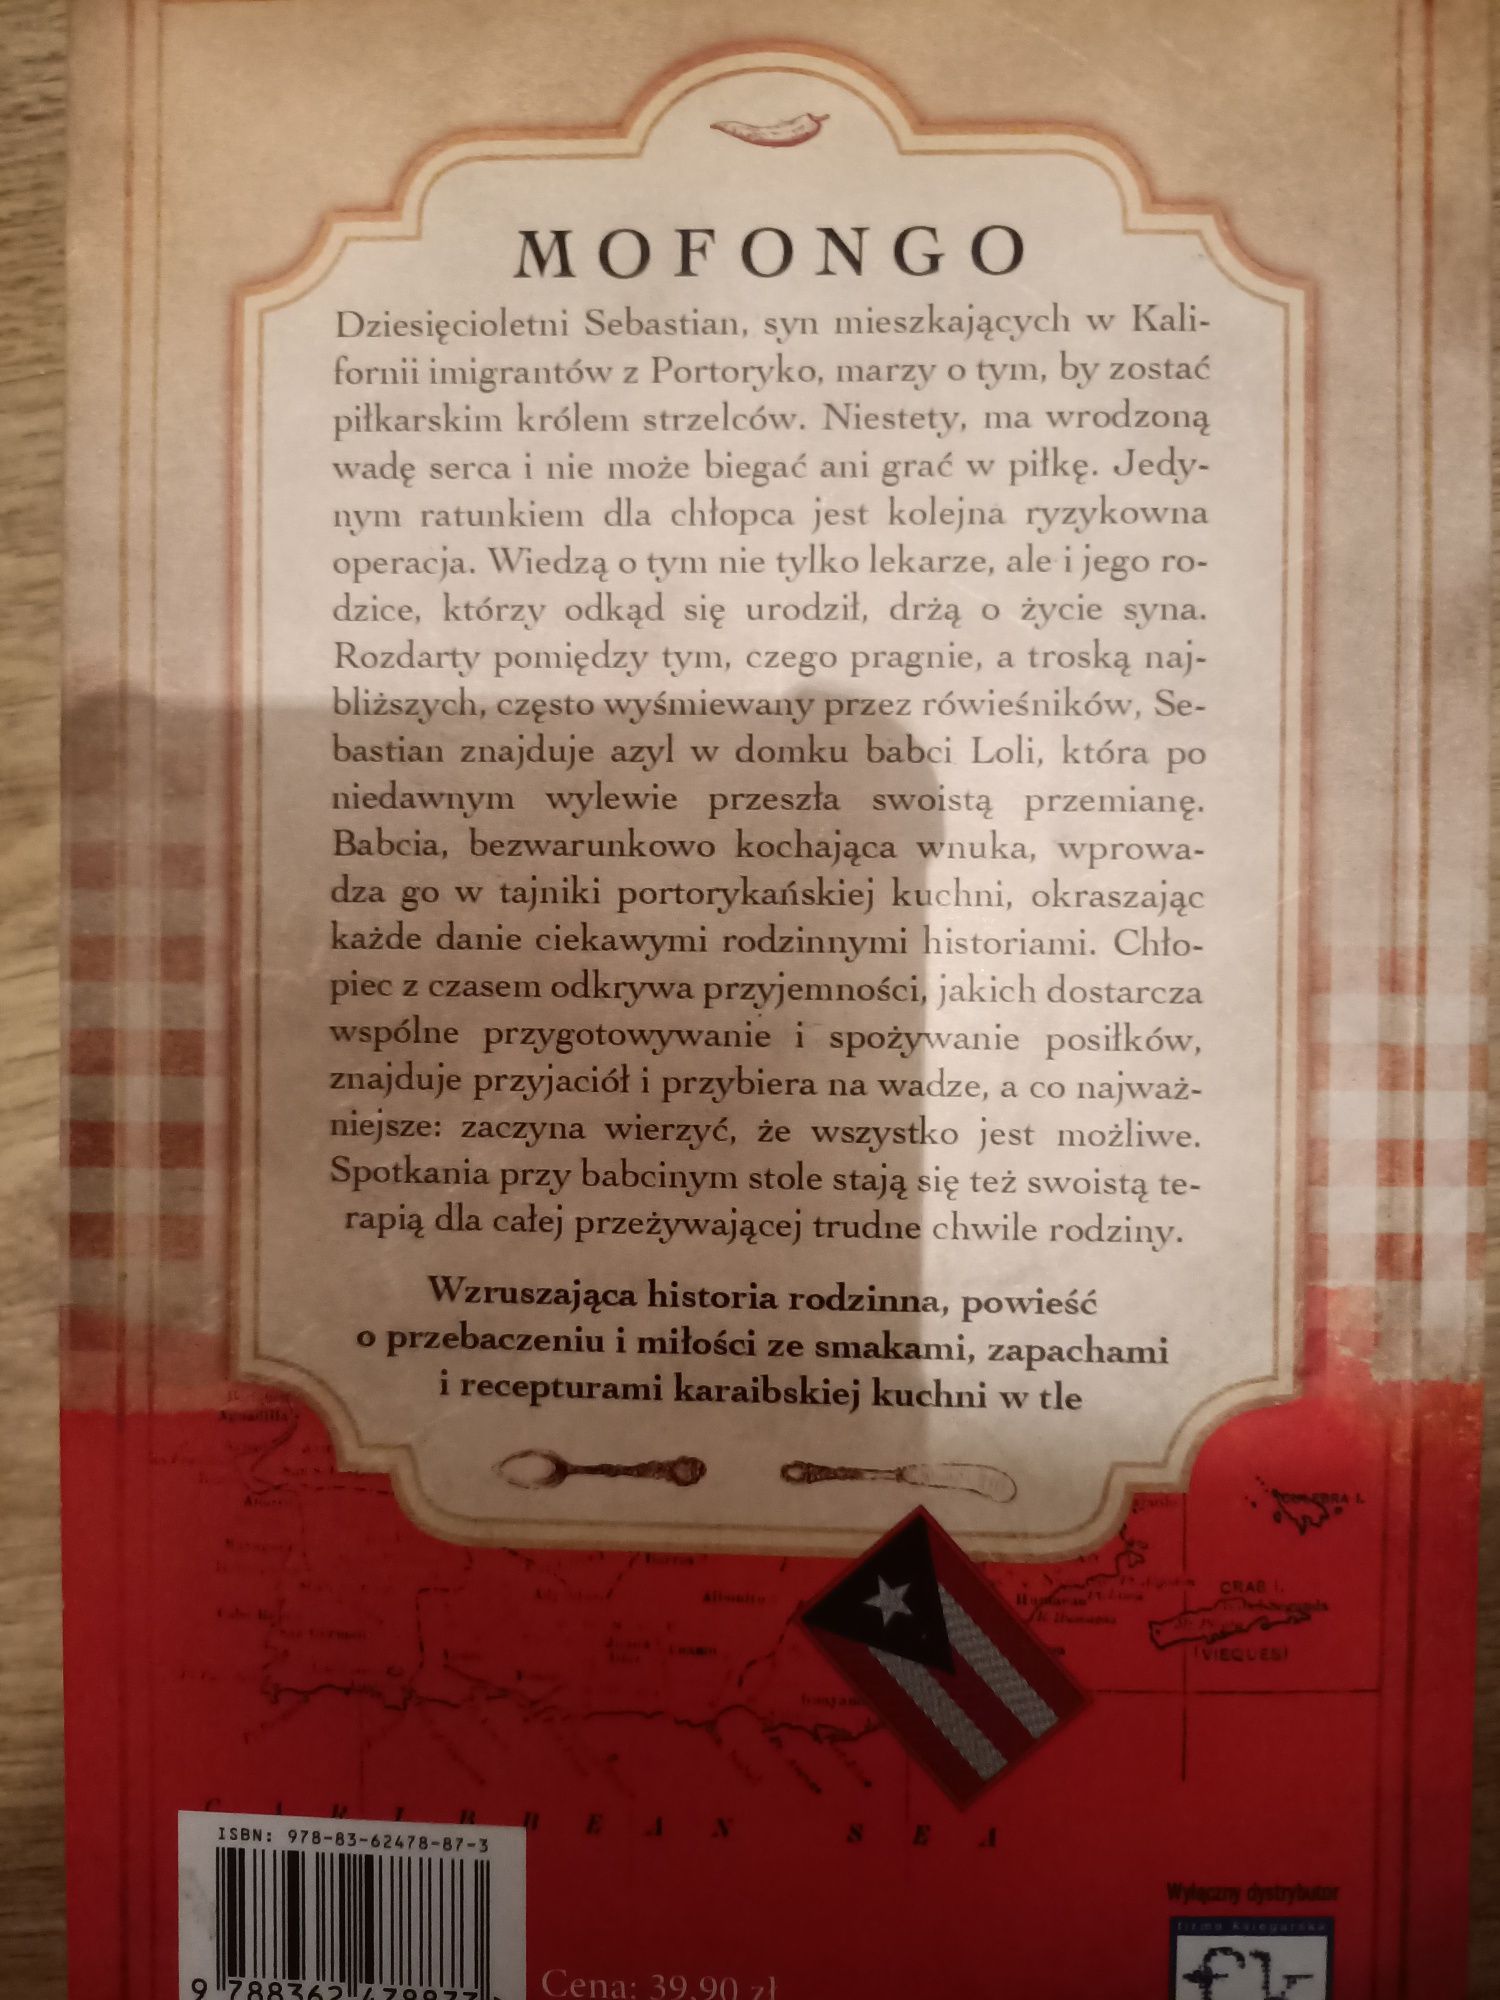 Książka pt " Mofongo" Cecilia Samartin